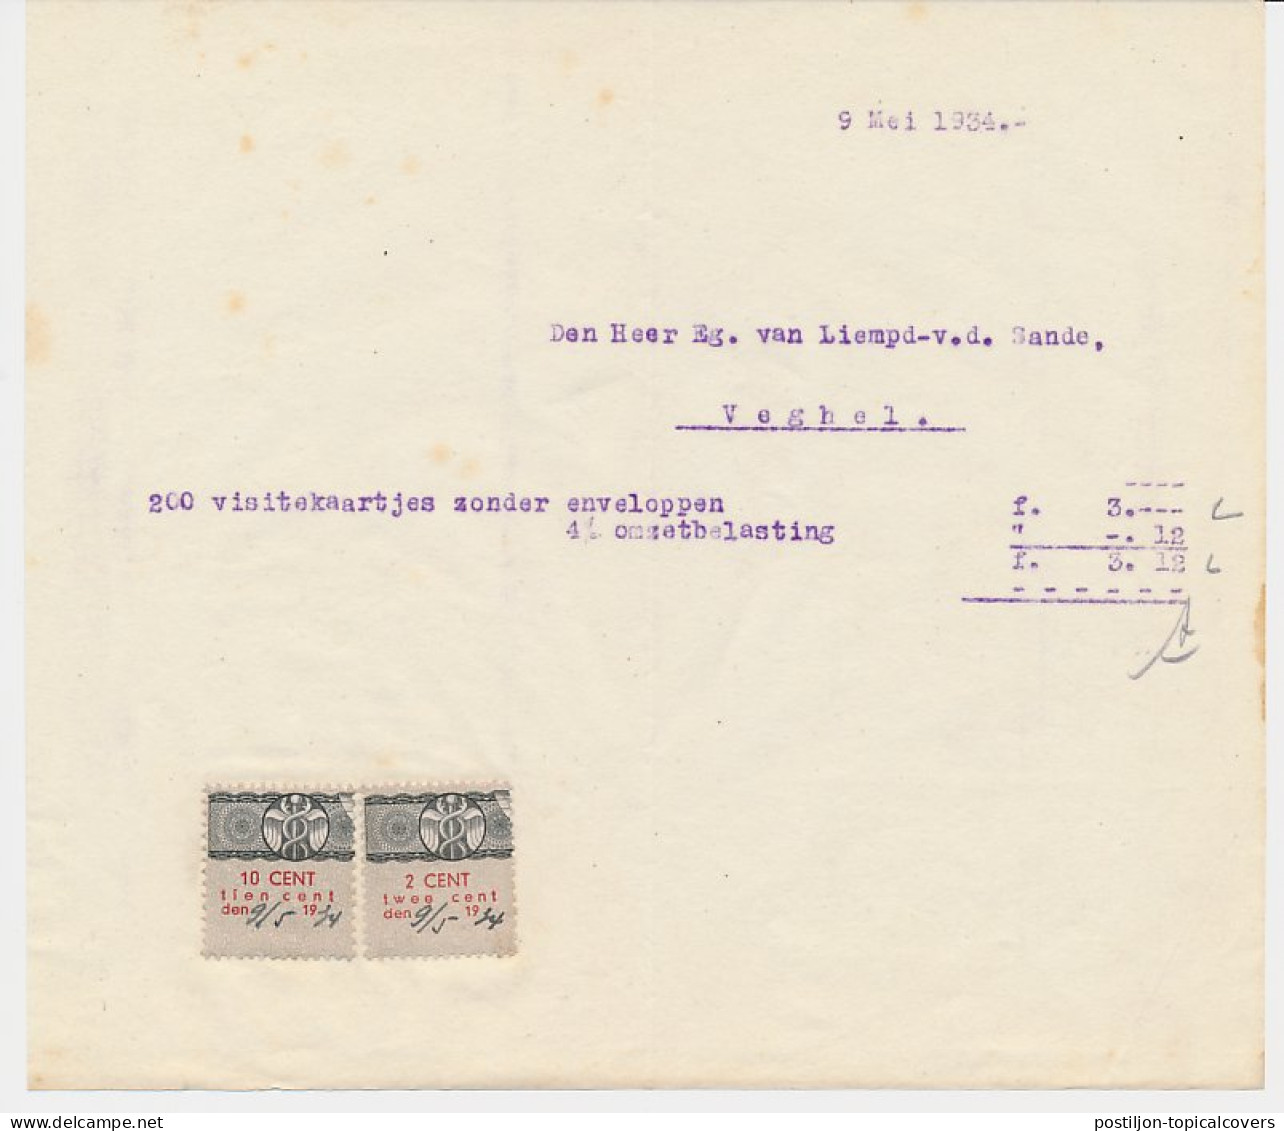 Omzetbelasting 2 / 10 CENT - Veghel 1934 - Fiscale Zegels